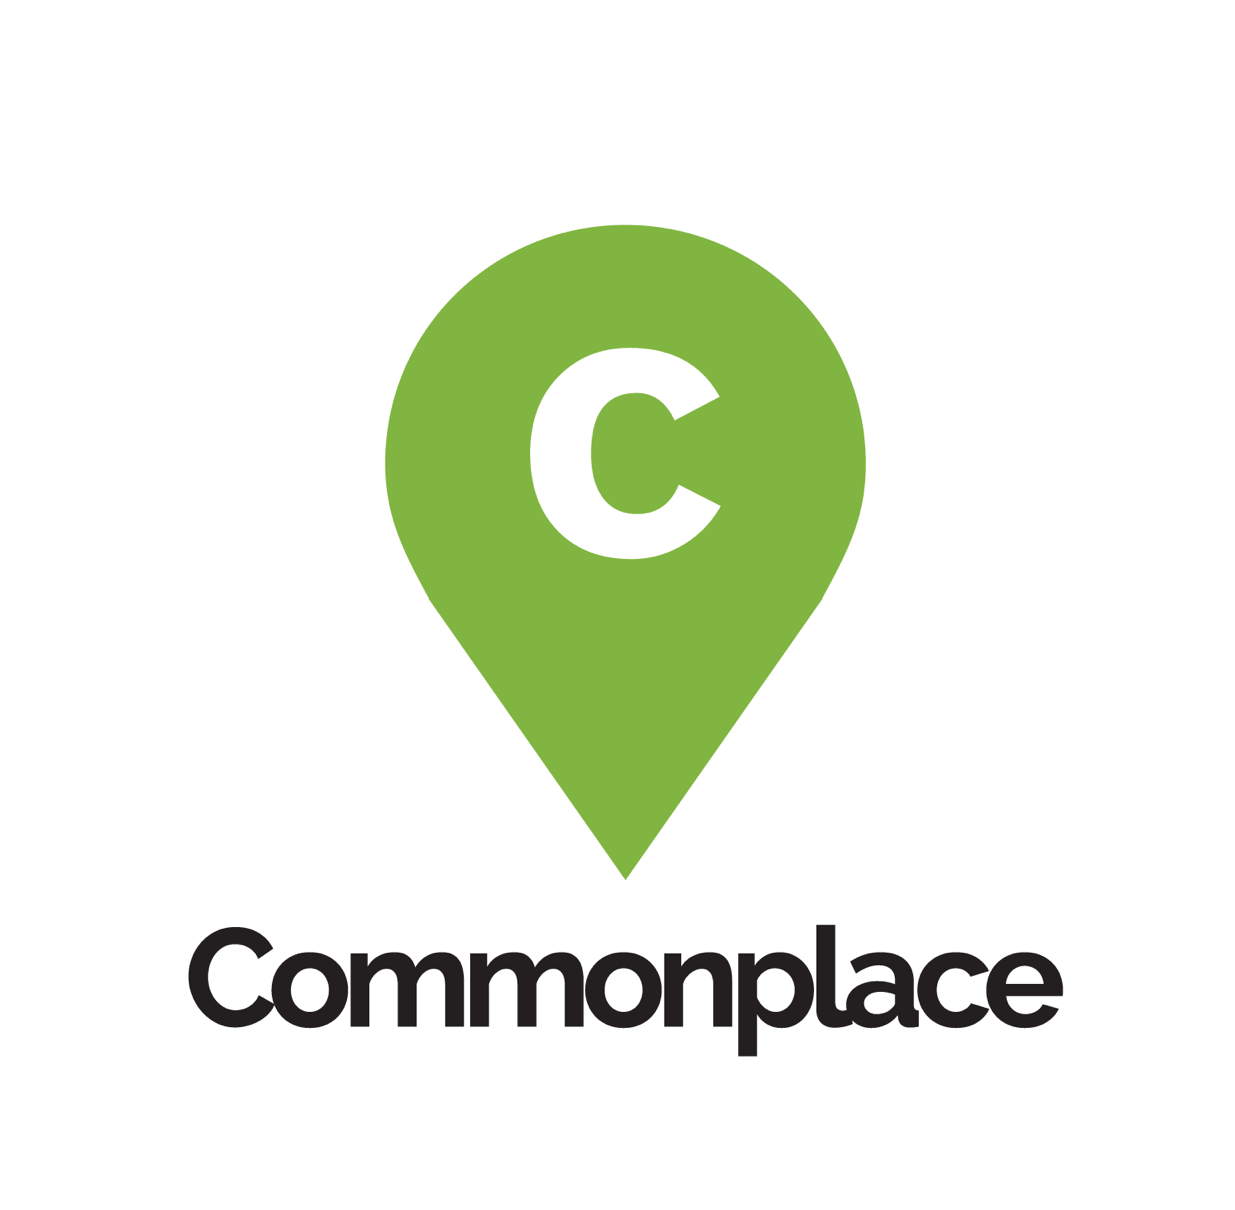 Places Logo - Commonplace - Online Community Consultation Platform